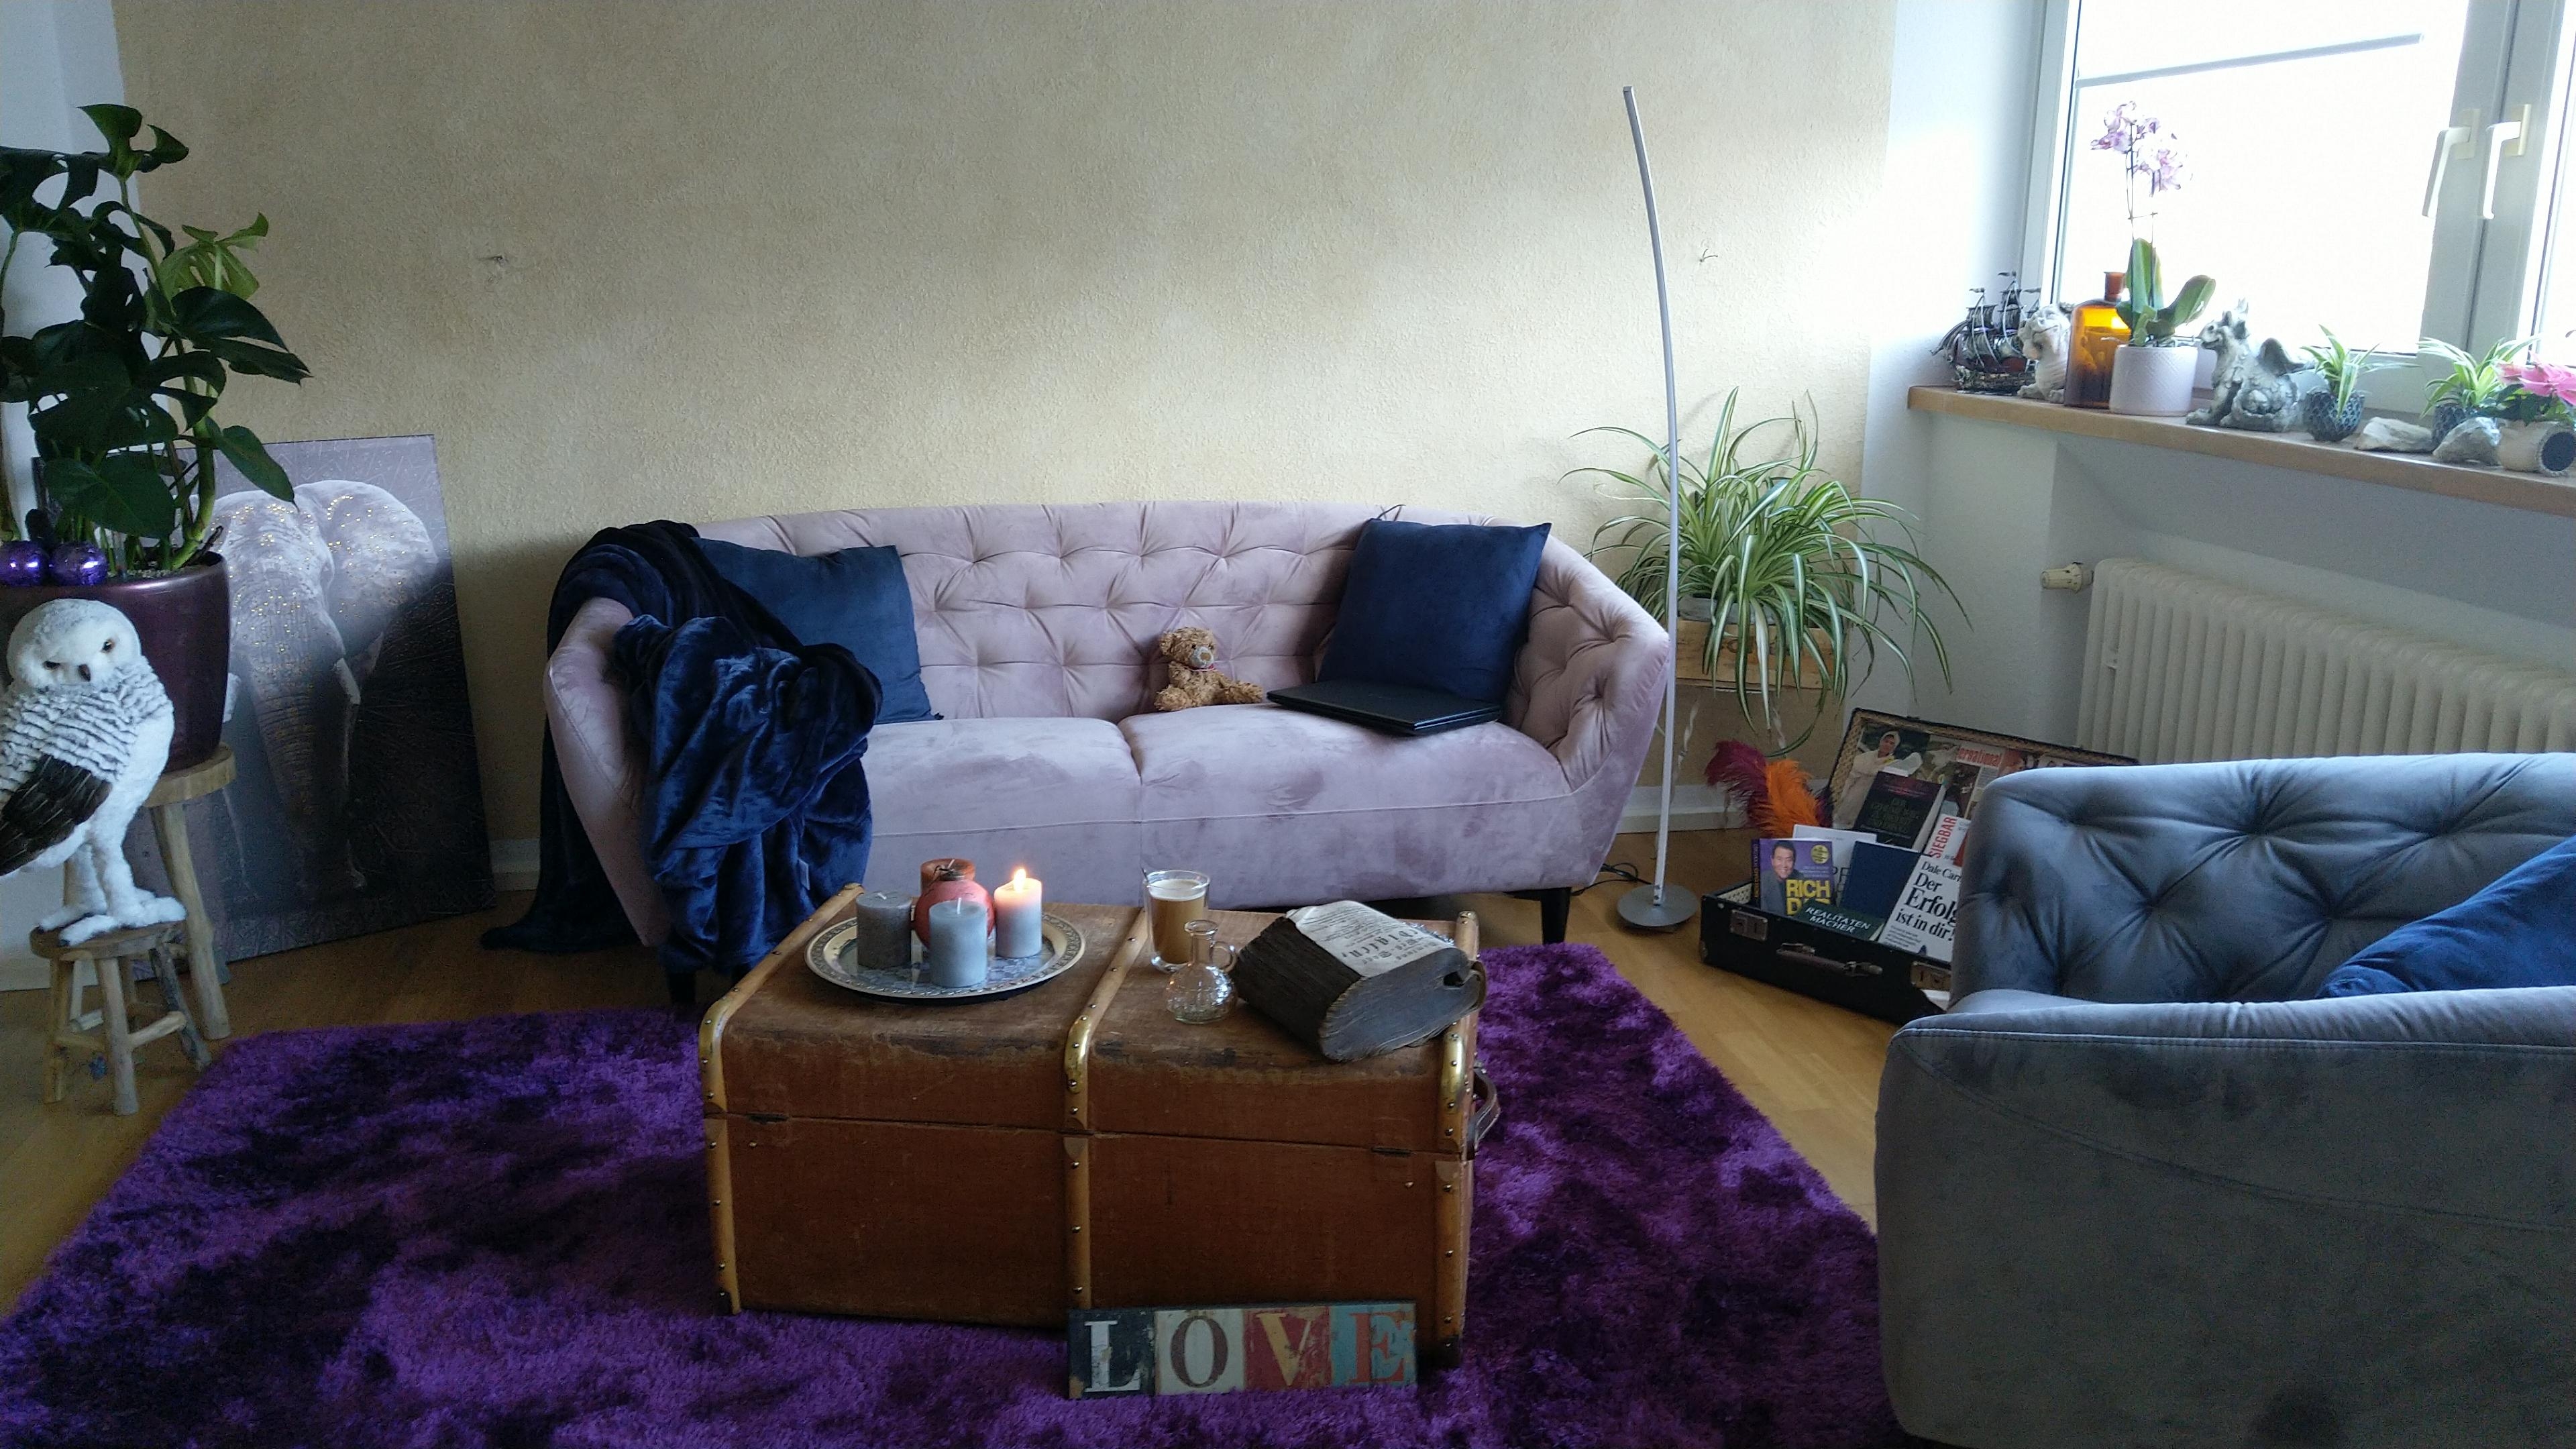 Noch nicht ganz fertig aber ich finde es trotzdem schon sehr stylich.

#wohnzimmer #stylich #couch #teppich 